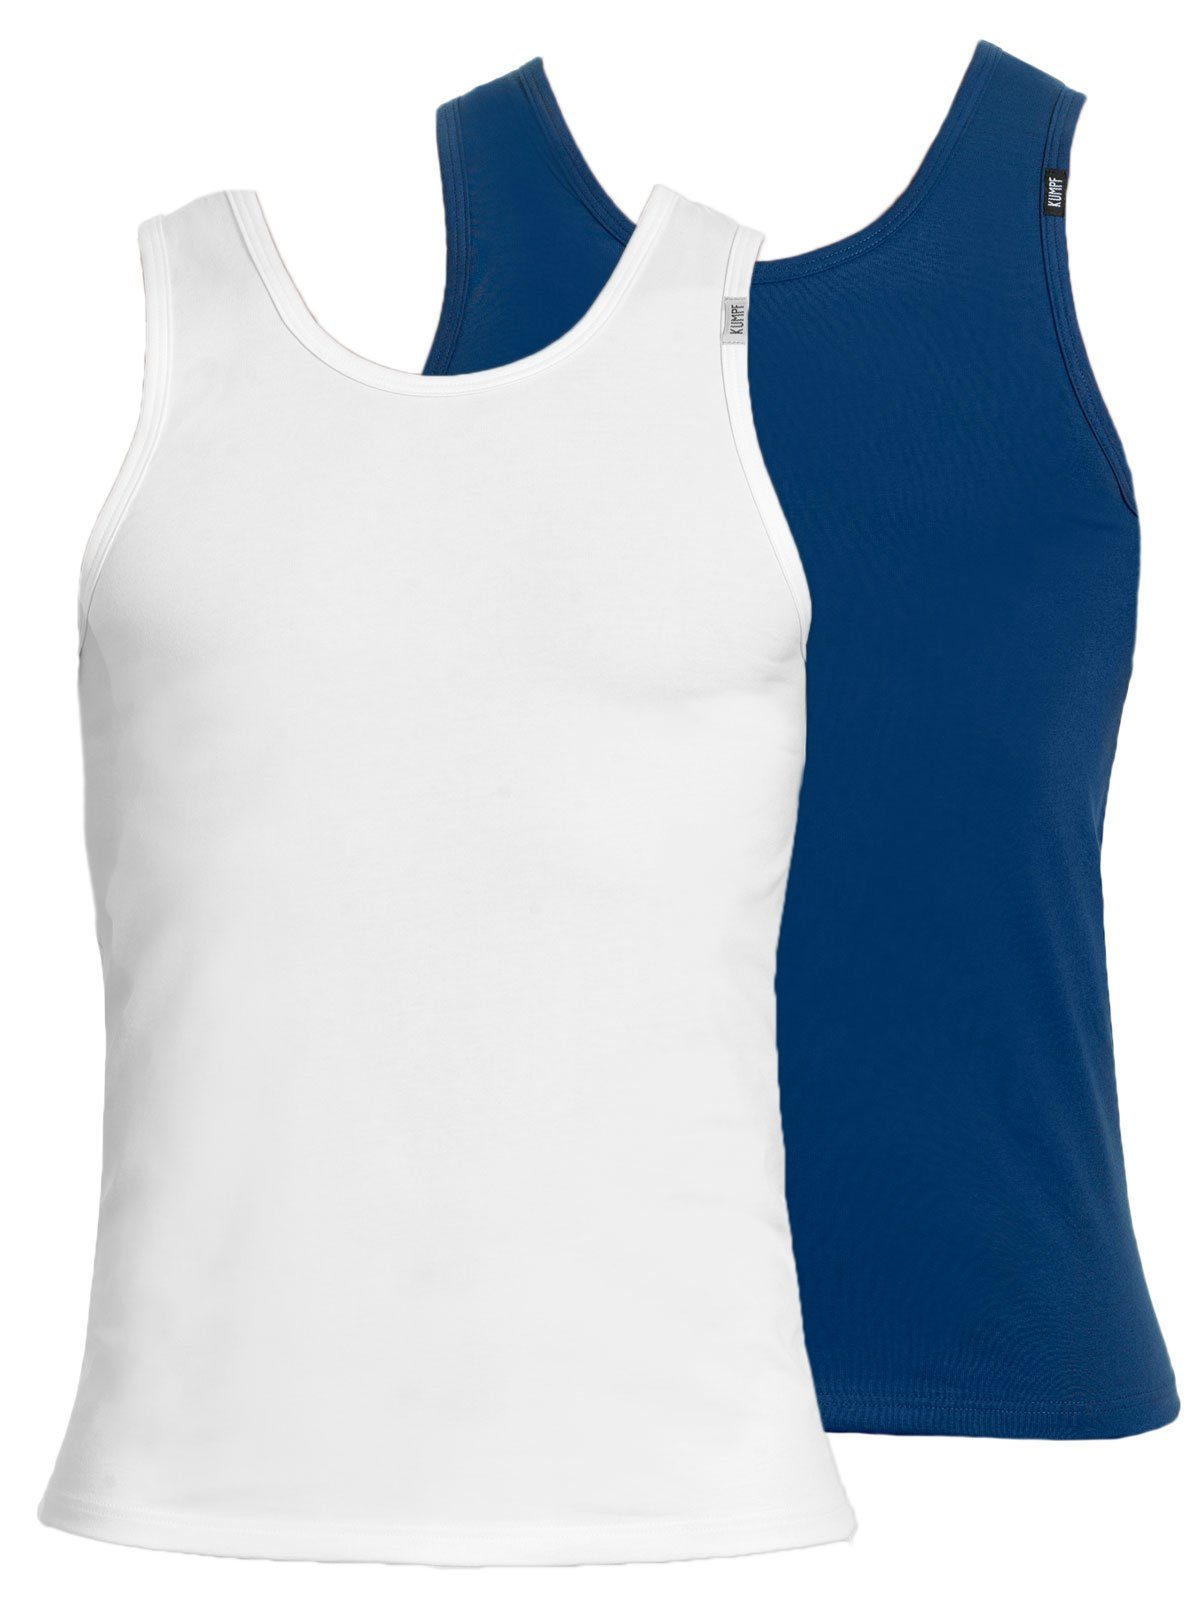 KUMPF Achselhemd 2er Sparpack Herren Unterhemd Bio Cotton (Spar-Set, 2-St) hohe Markenqualität darkblue weiss